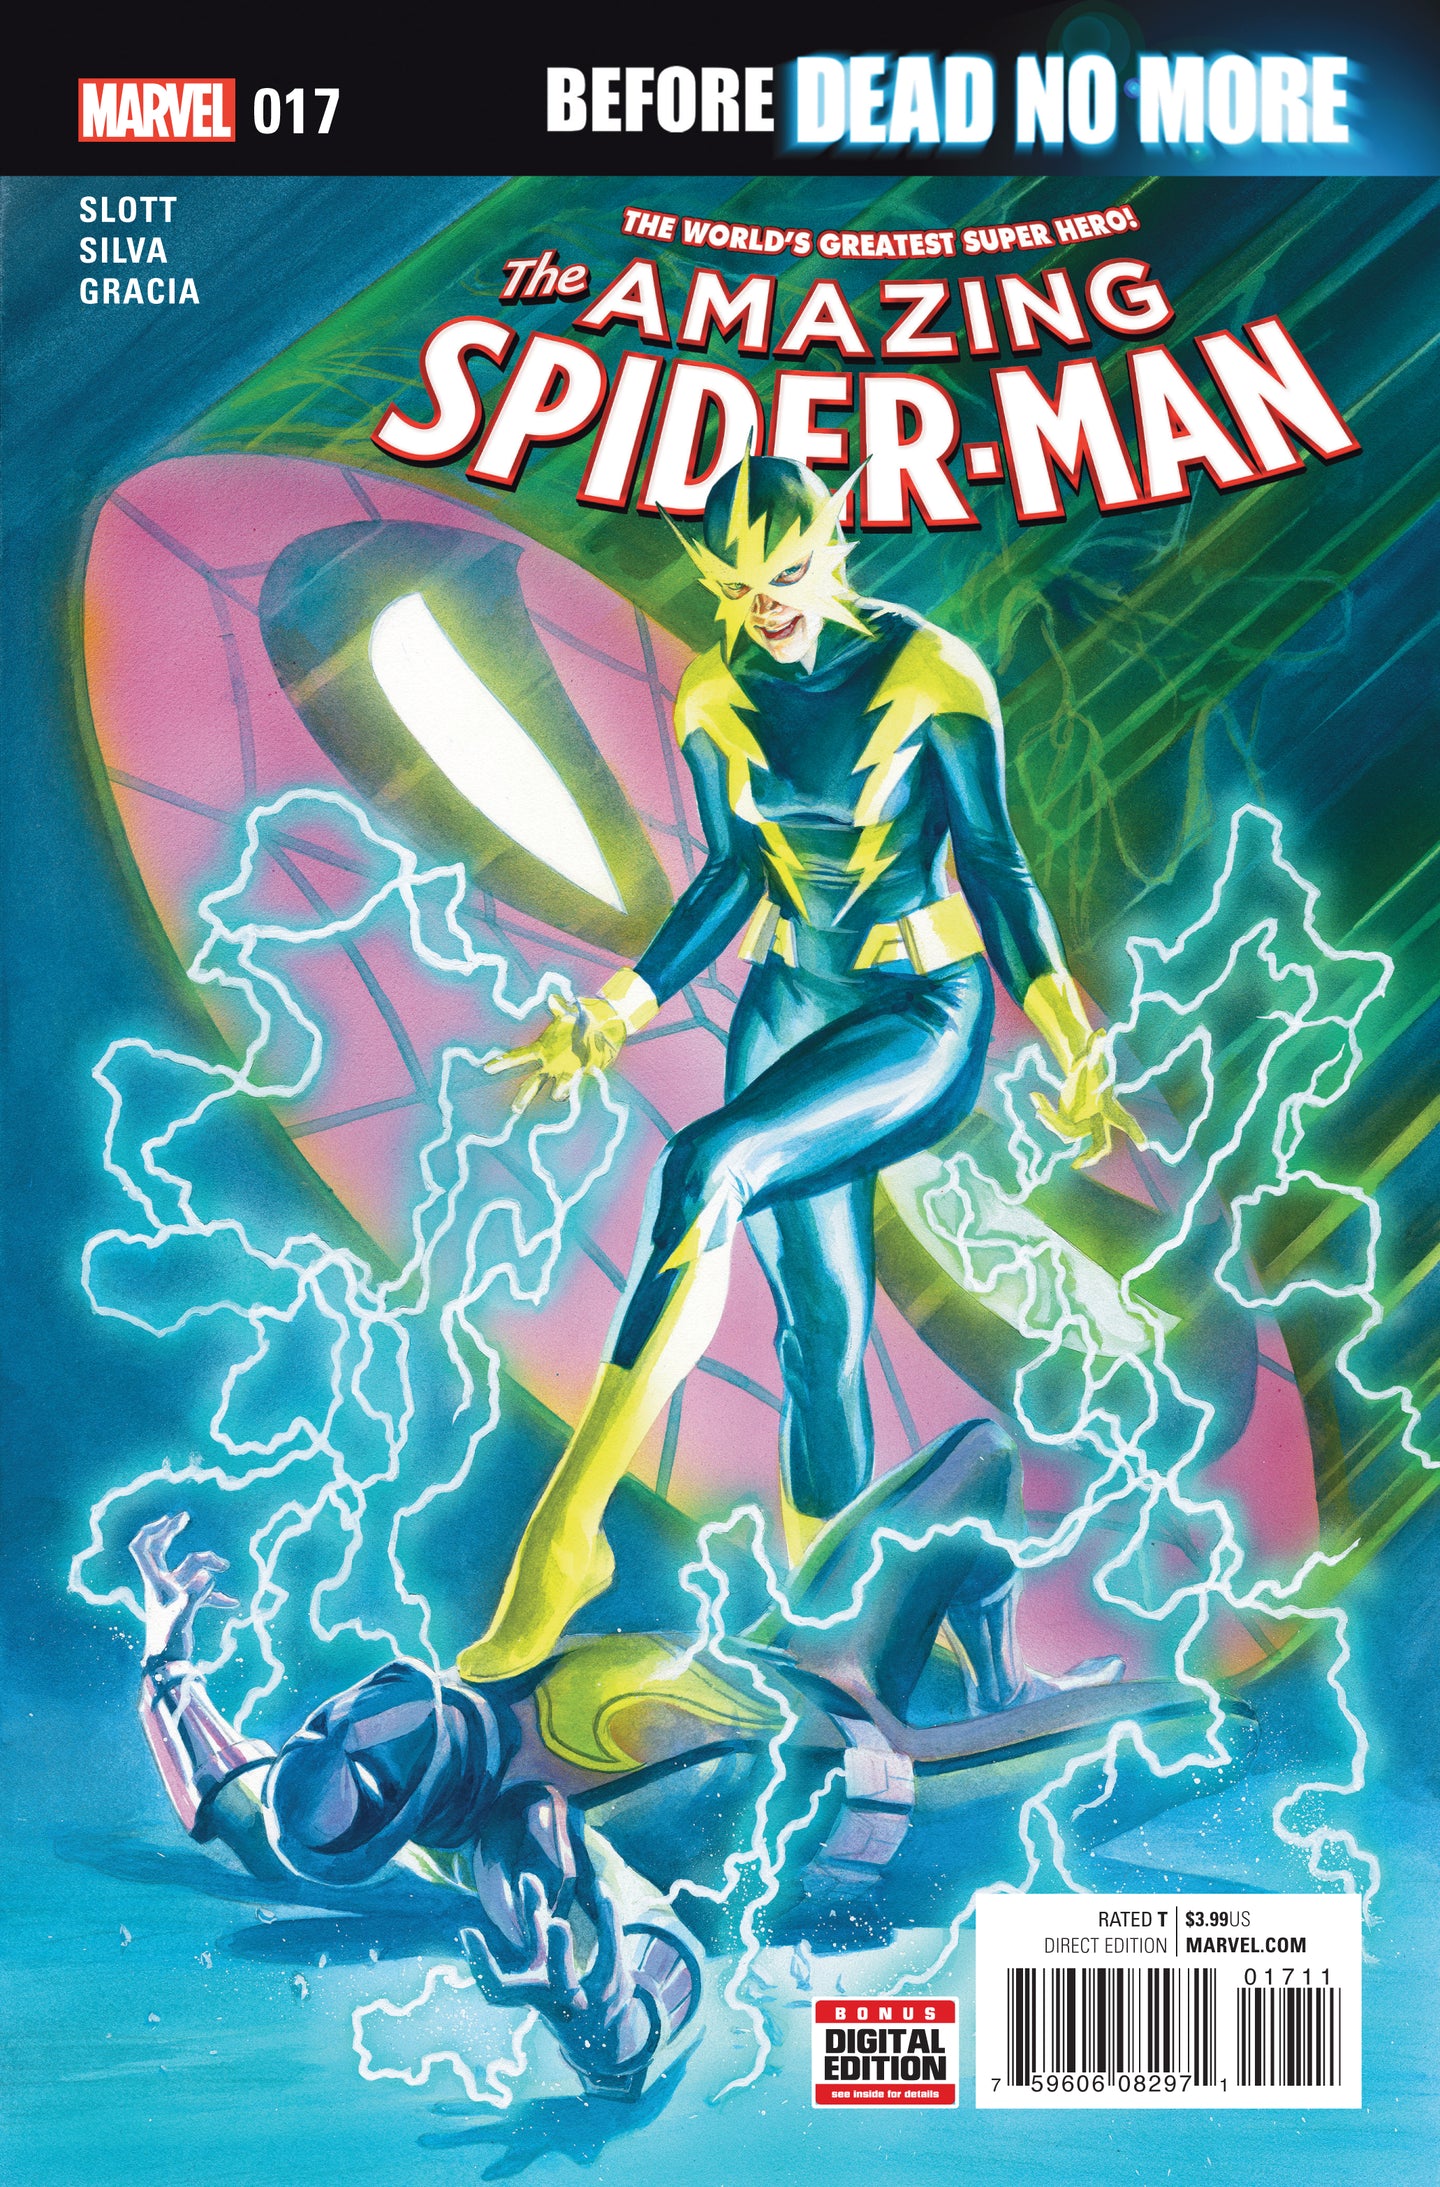 AMAZING SPIDER-MAN #17 BDNM